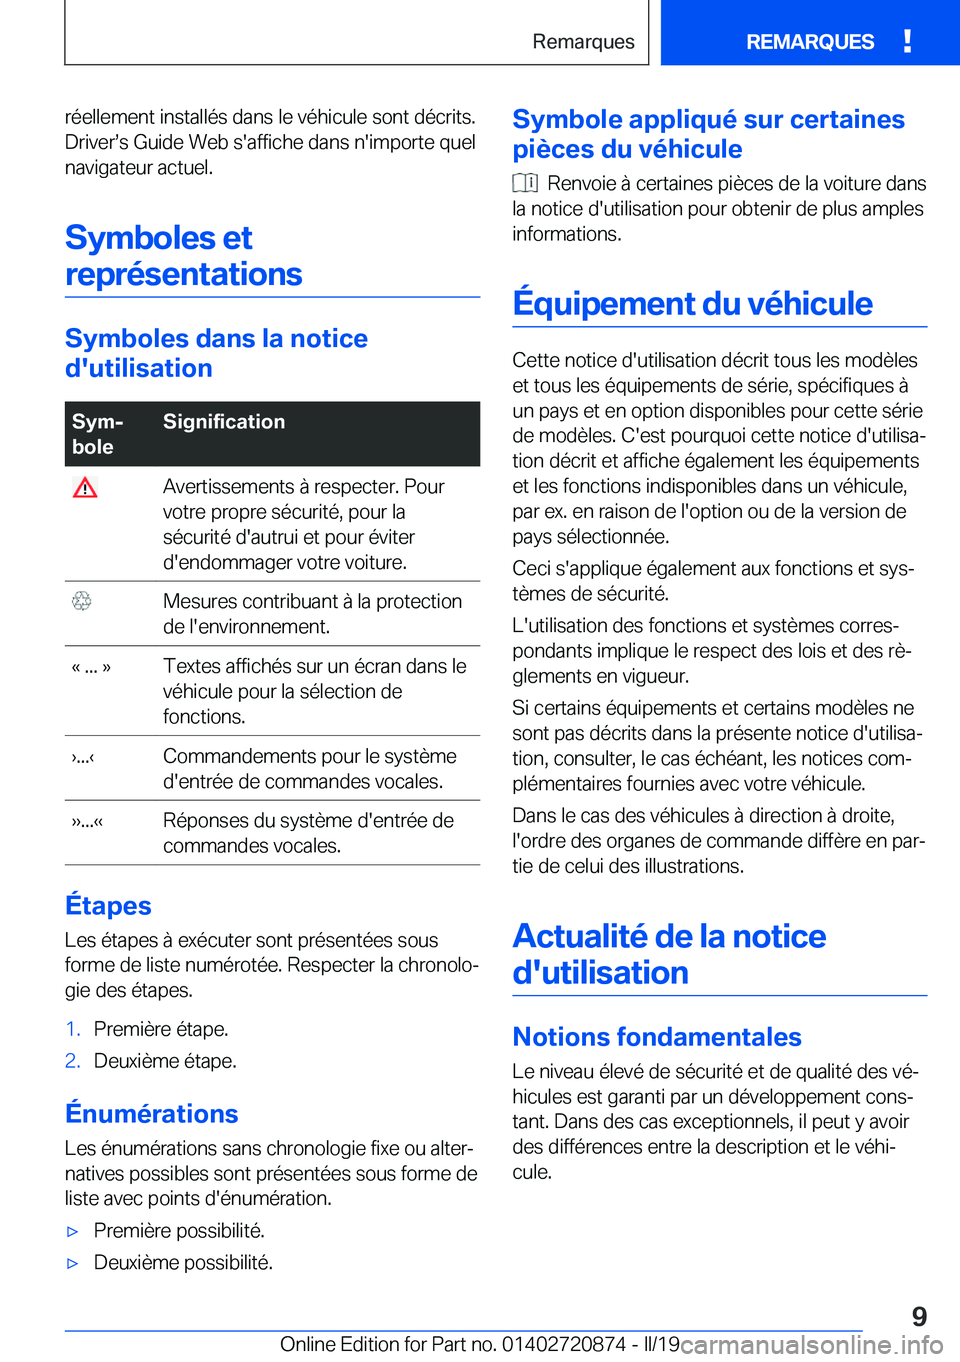 BMW X7 2019  Notices Demploi (in French) �r�é�e�l�l�e�m�e�n�t��i�n�s�t�a�l�l�é�s��d�a�n�s��l�e��v�é�h�i�c�u�l�e��s�o�n�t��d�é�c�r�i�t�s�.�D�r�i�v�e�rs�s��G�u�i�d�e��W�e�b��s�'�a�f�f�i�c�h�e��d�a�n�s��n�'�i�m�p�o�r�t�e